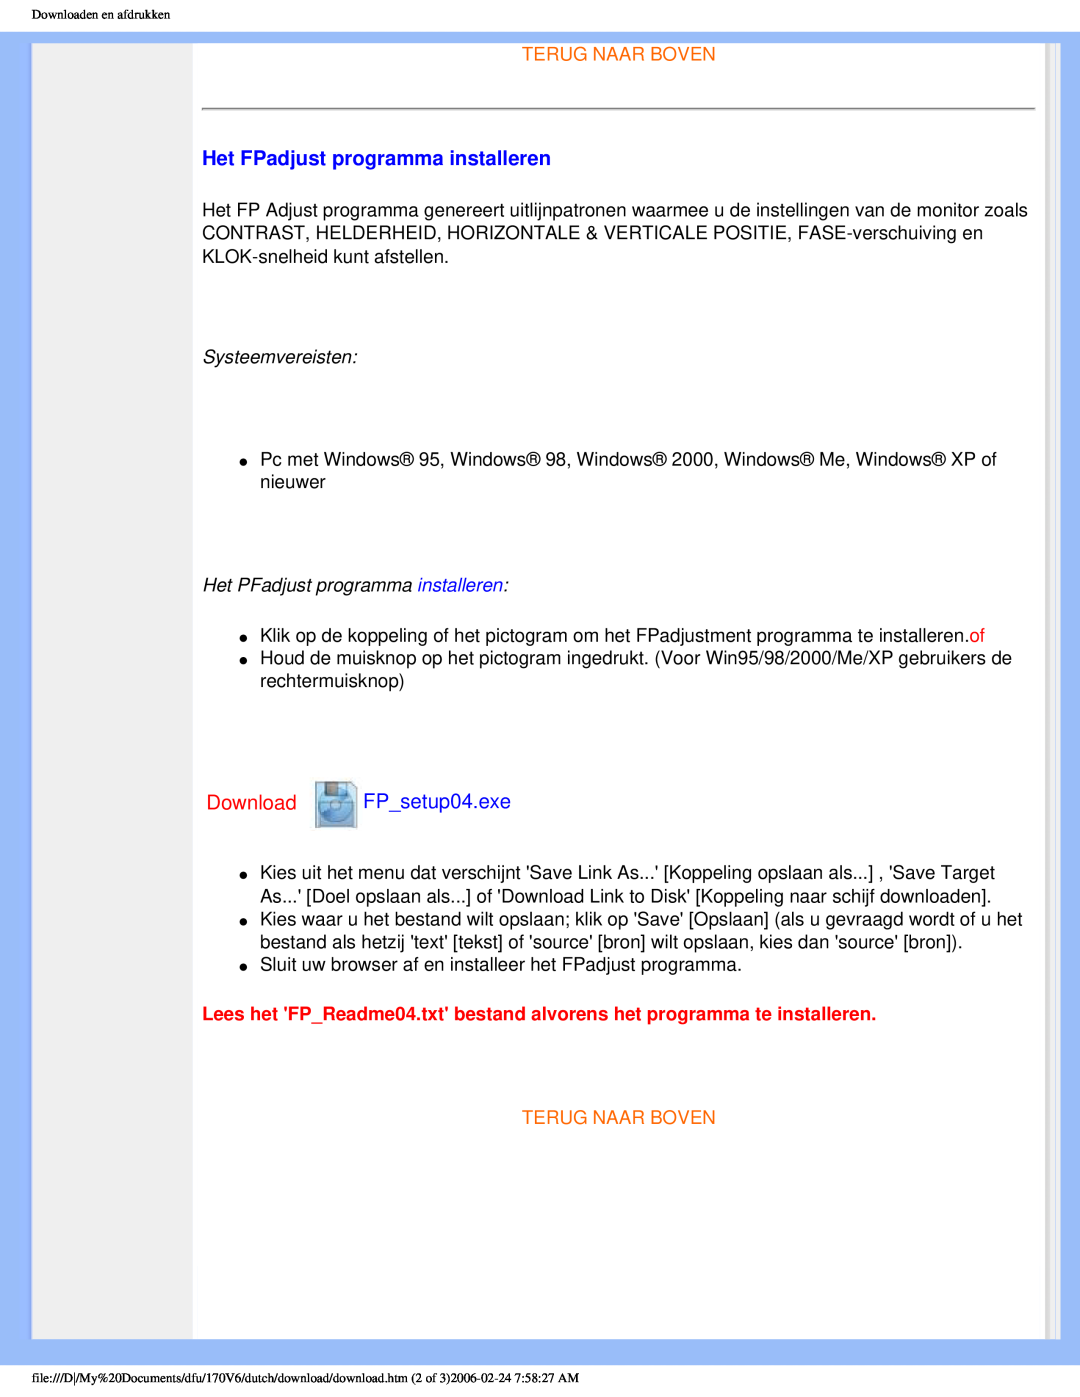 Philips 170V6 user manual Het FPadjust programma installeren, Download FP setup04.exe, Terug Naar Boven 